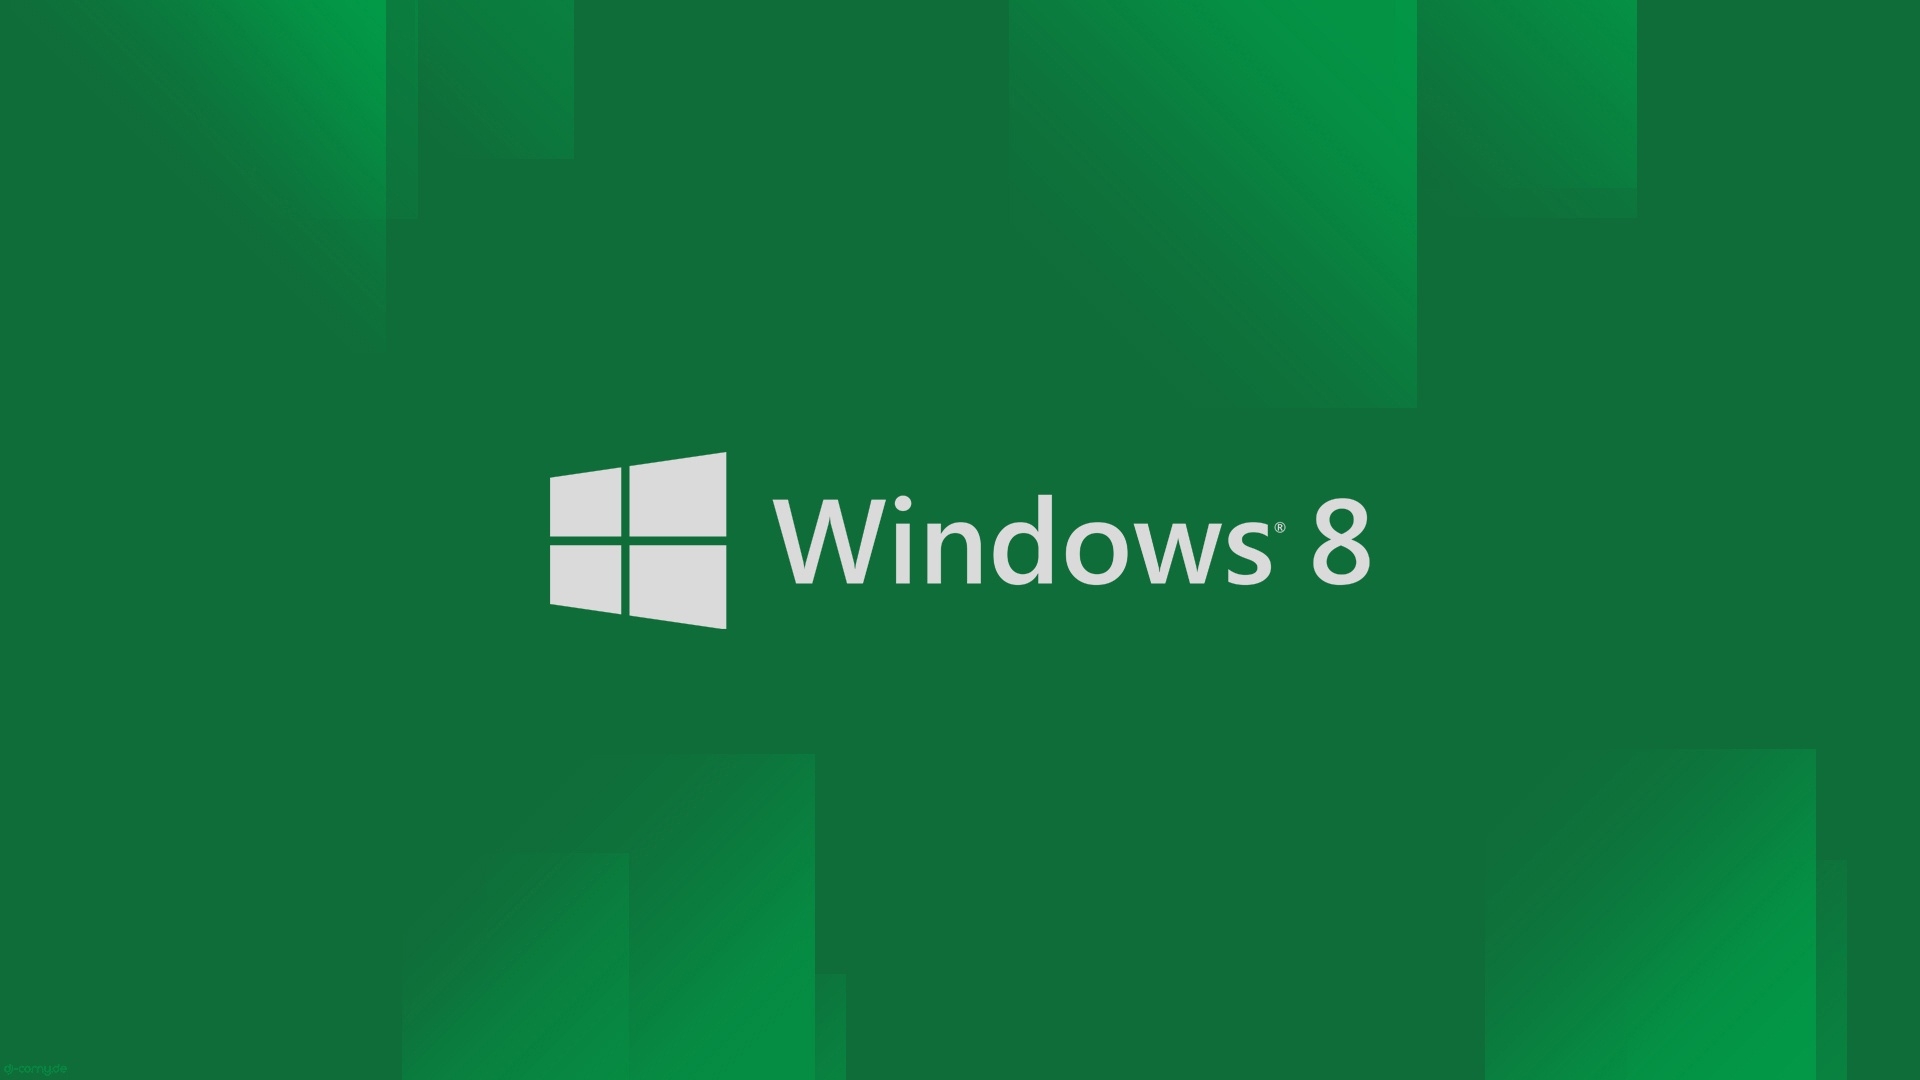 Windows 8 Wallpaper 1080p Wallpapersafari